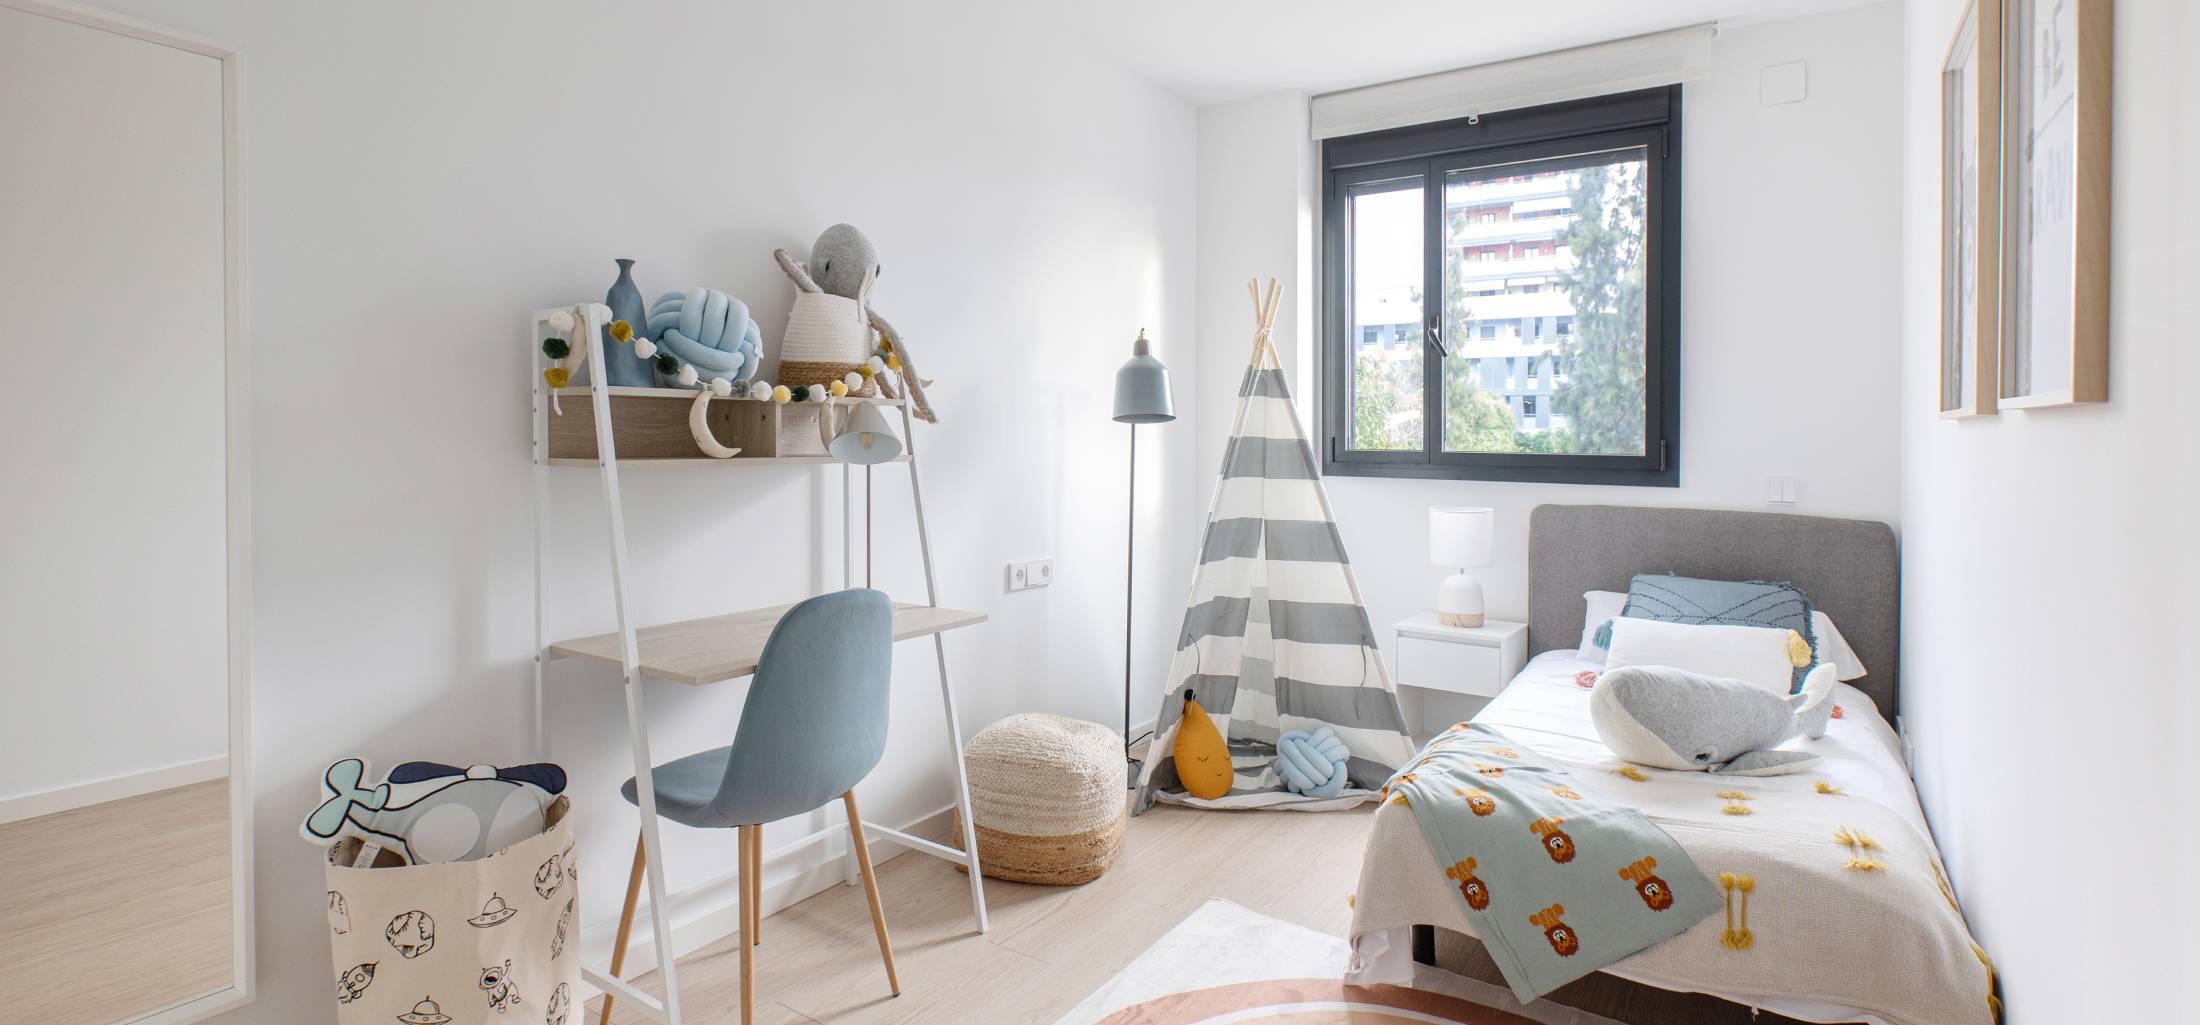 Double bed of apartment for rent in Marobert | Badalona 